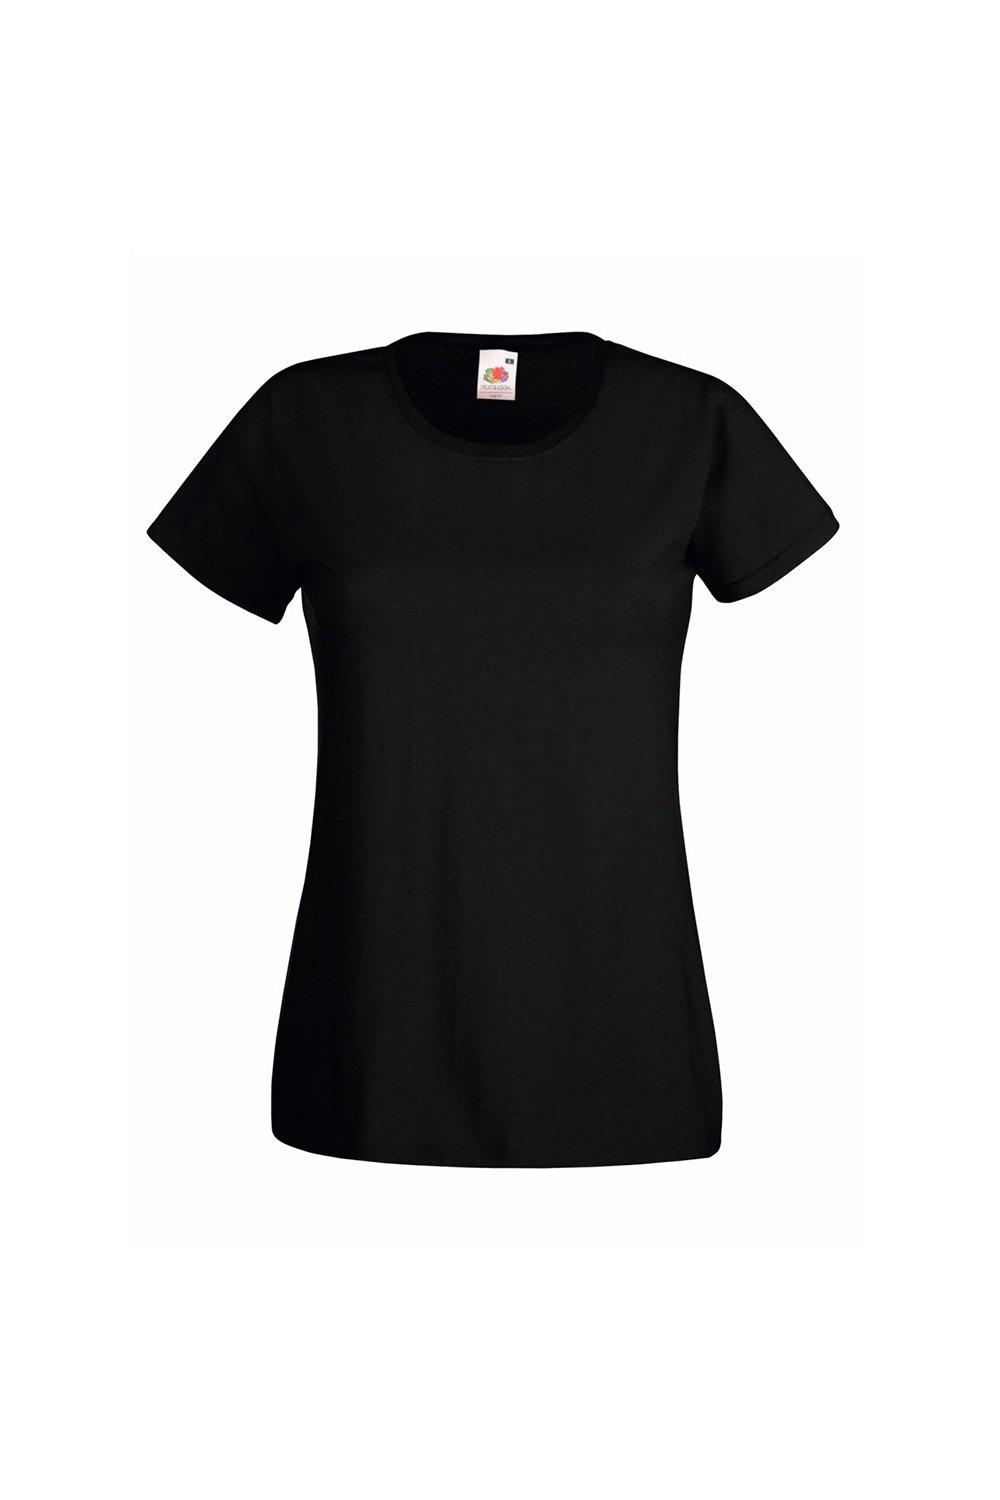 Повседневная футболка с короткими рукавами Value Universal Textiles, черный повседневная футболка value с длинным рукавом universal textiles белый